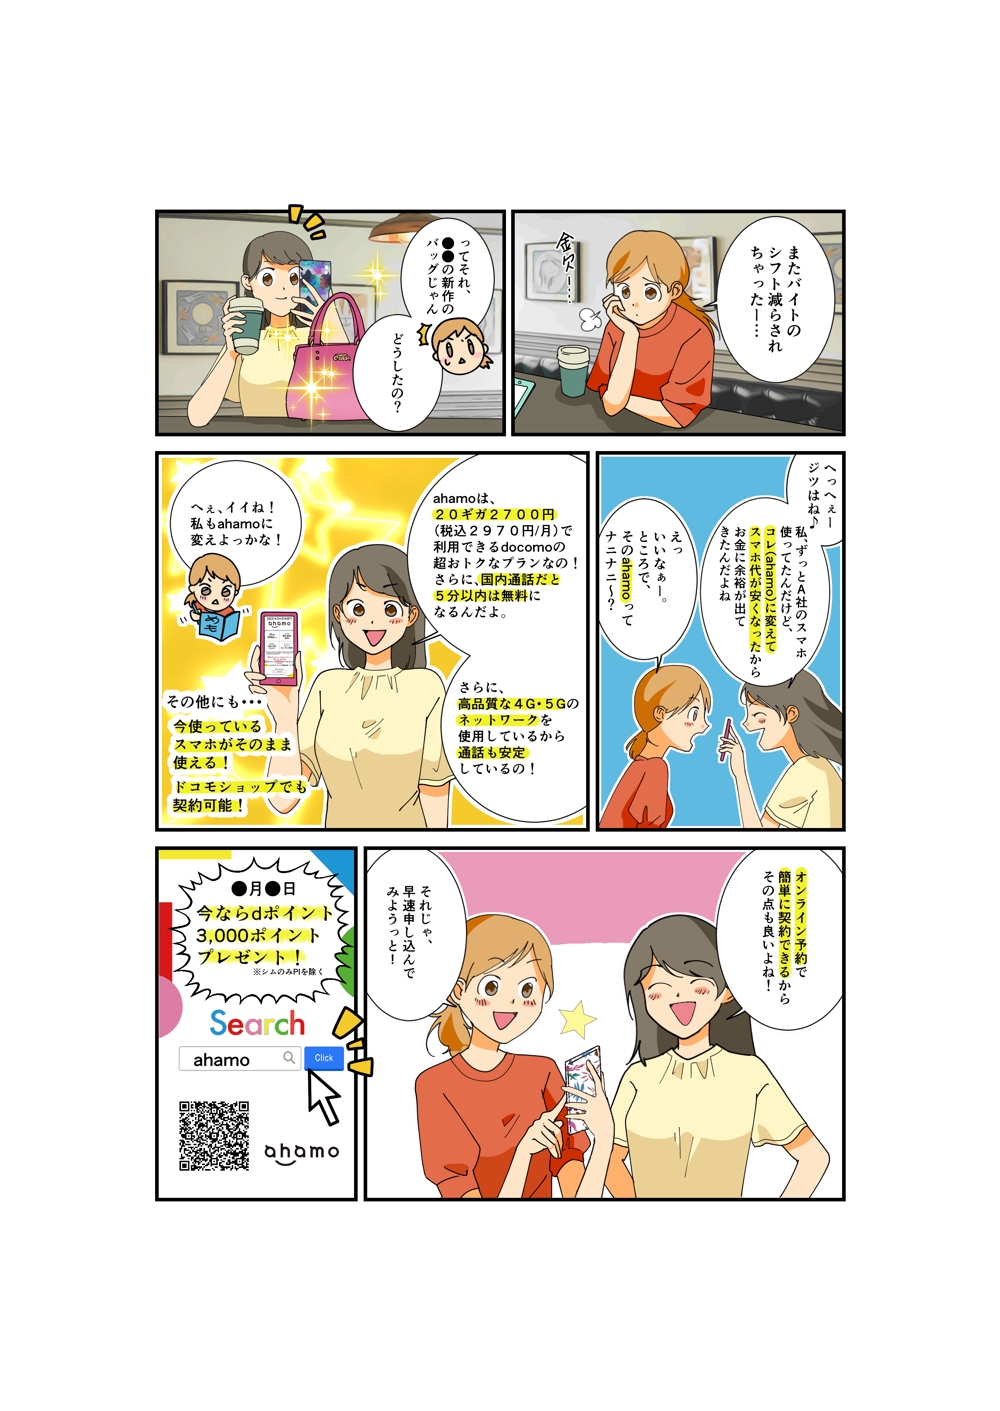 株式会社docomo新サービスahamo,コンペ出品用の漫画を描きました